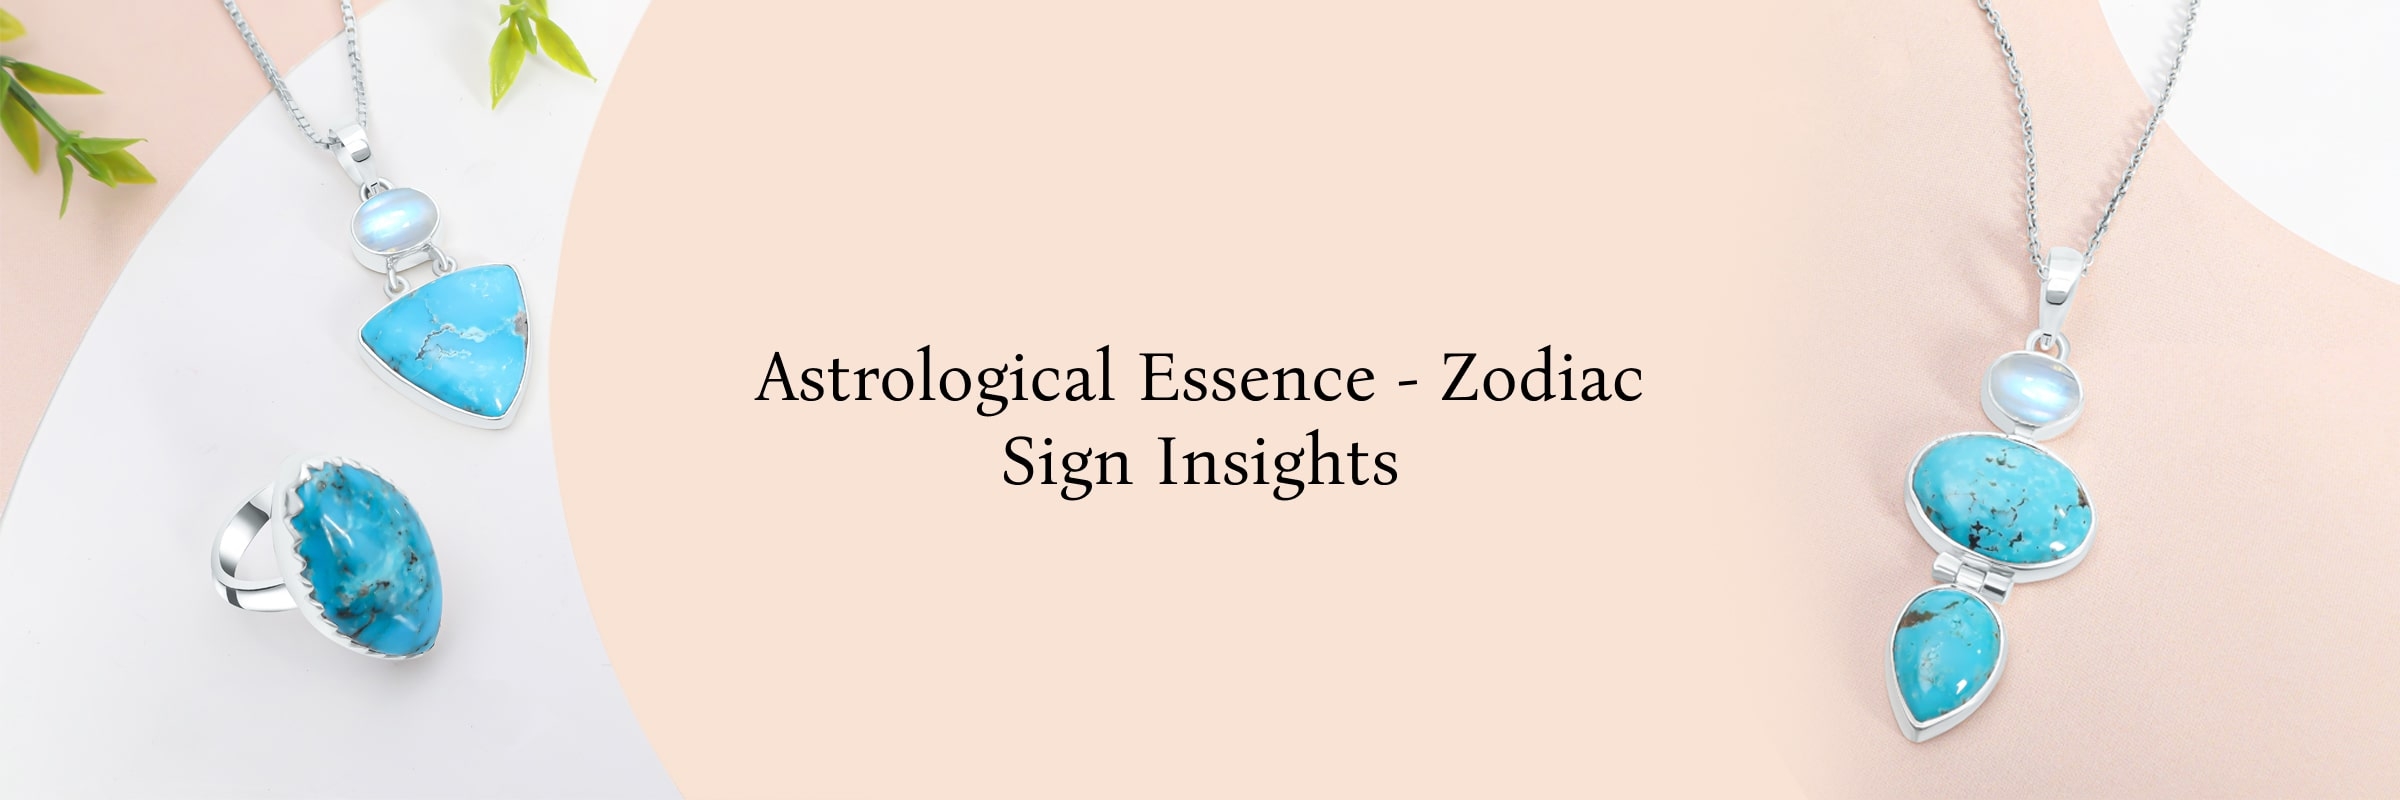 Zodiac sign associated